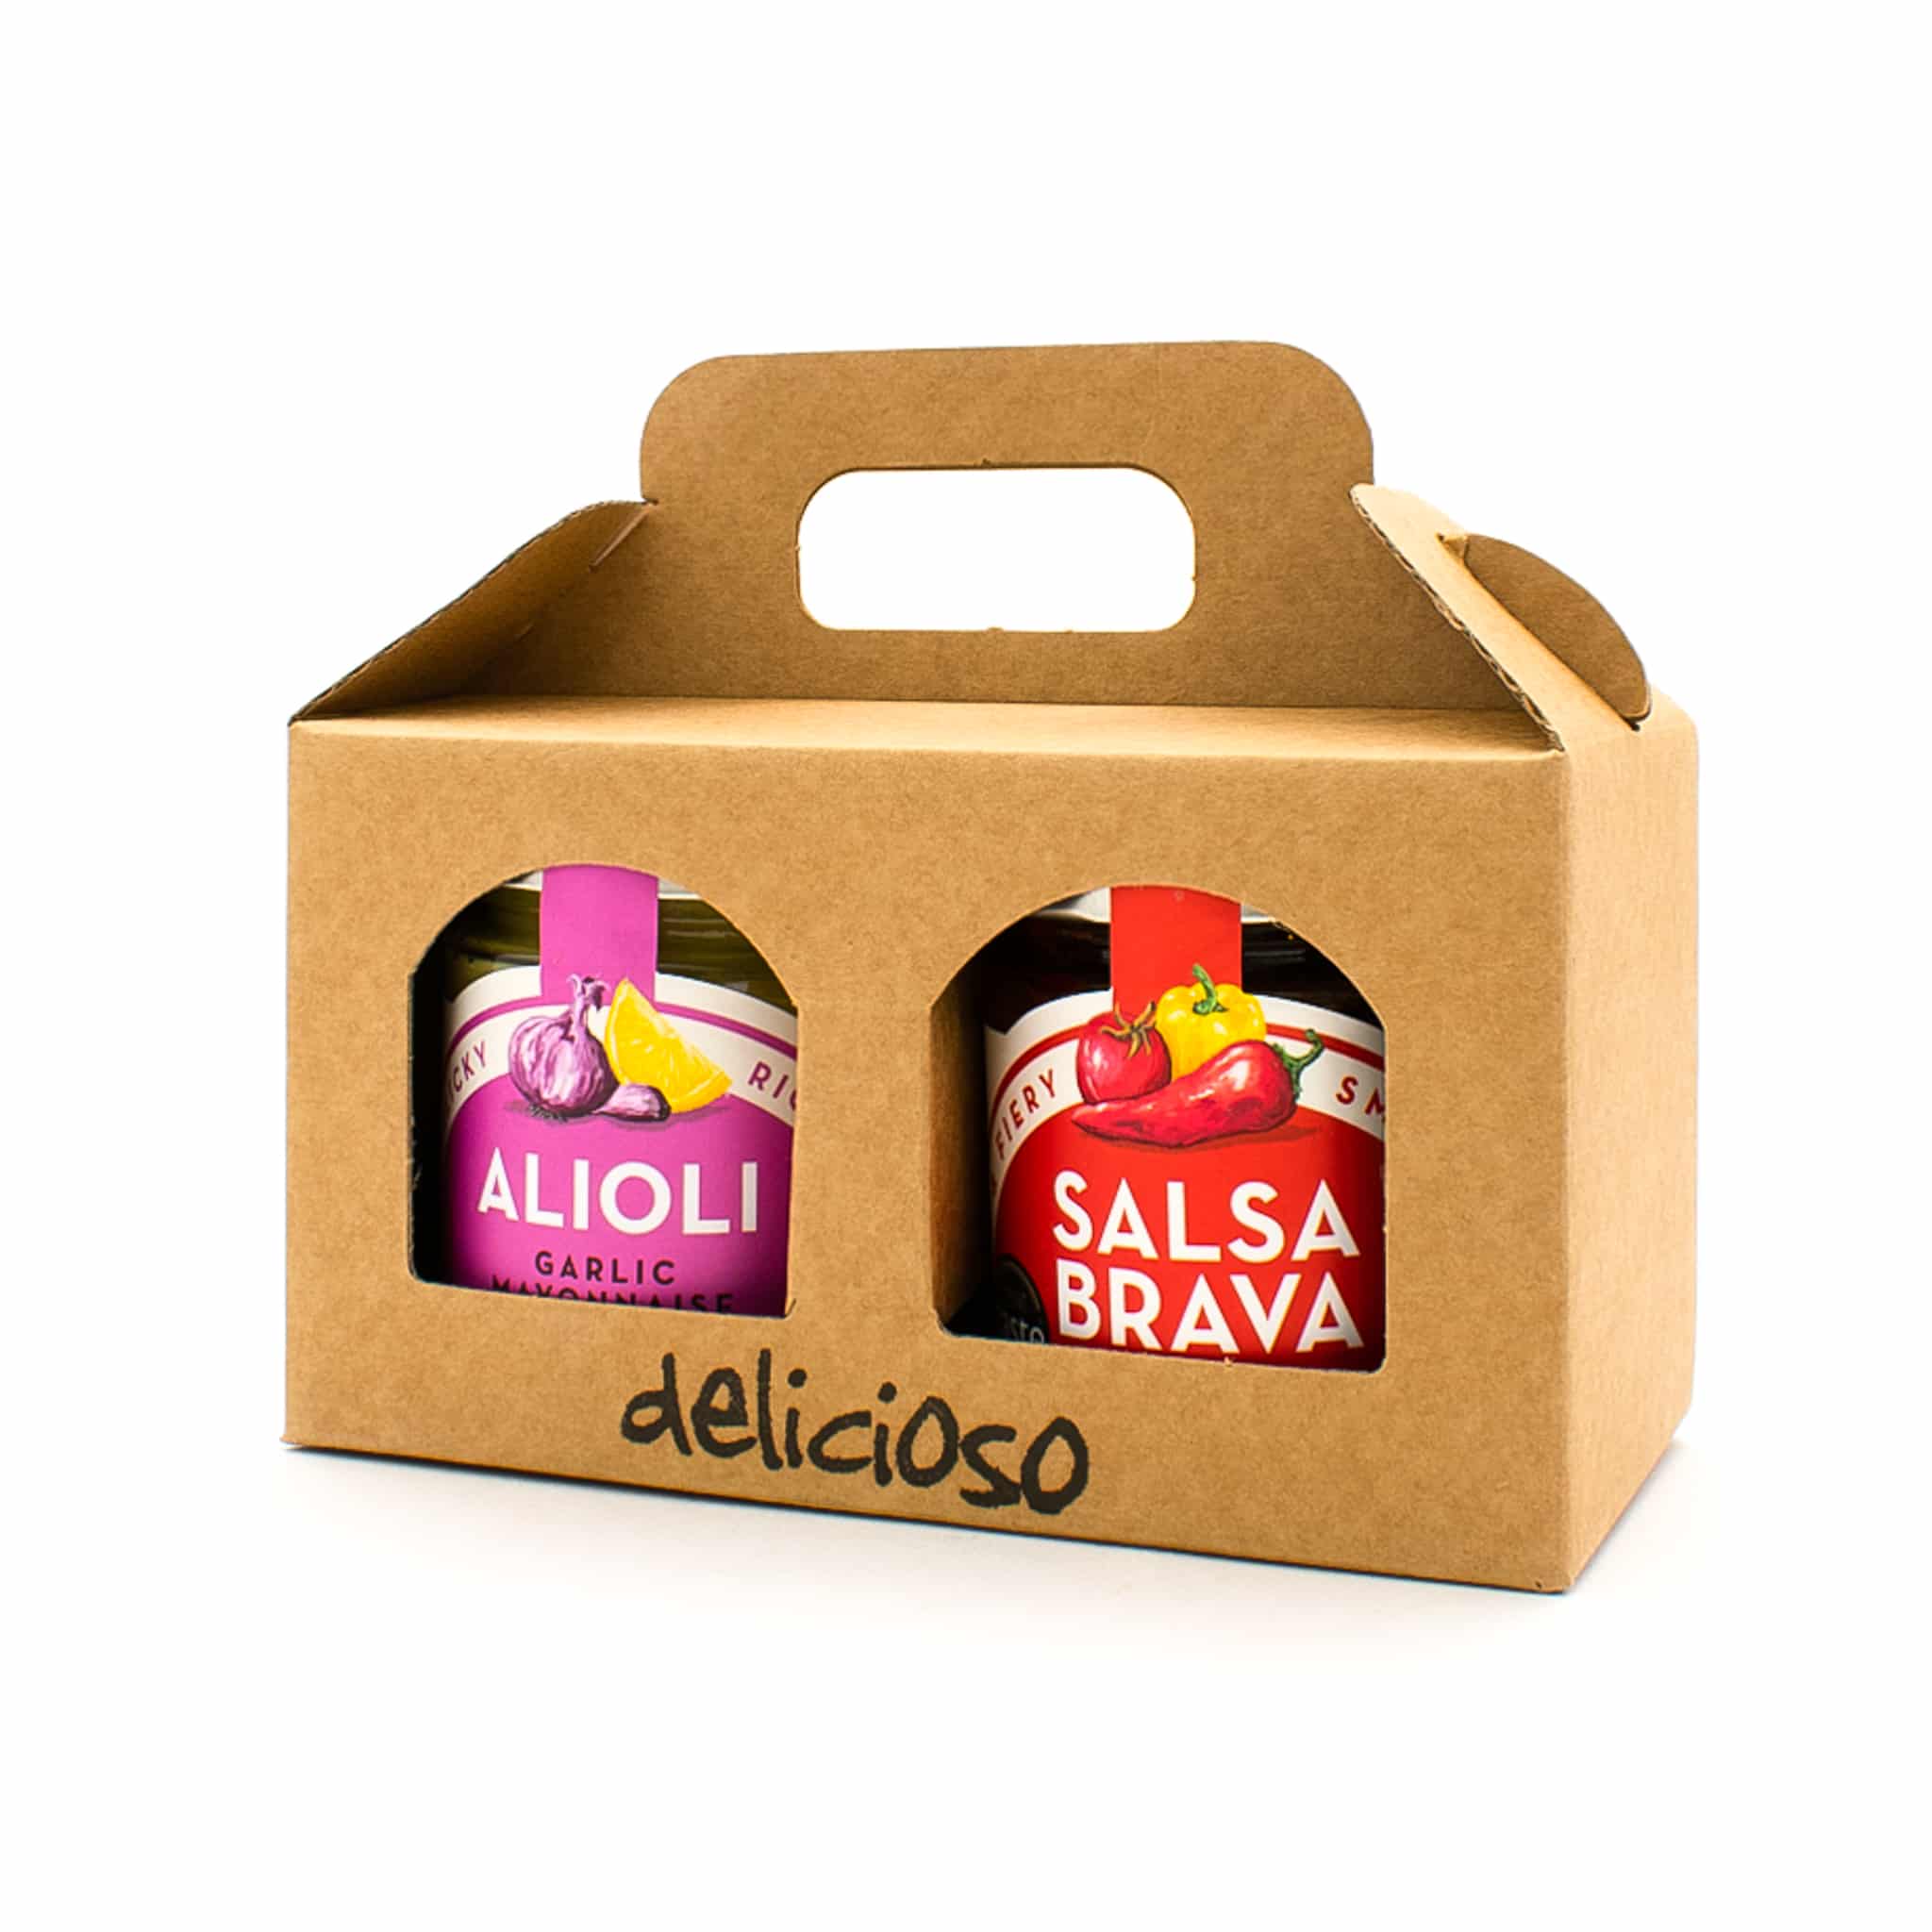 Delicioso Classic Spanish Salsa Gift Box 2x165g